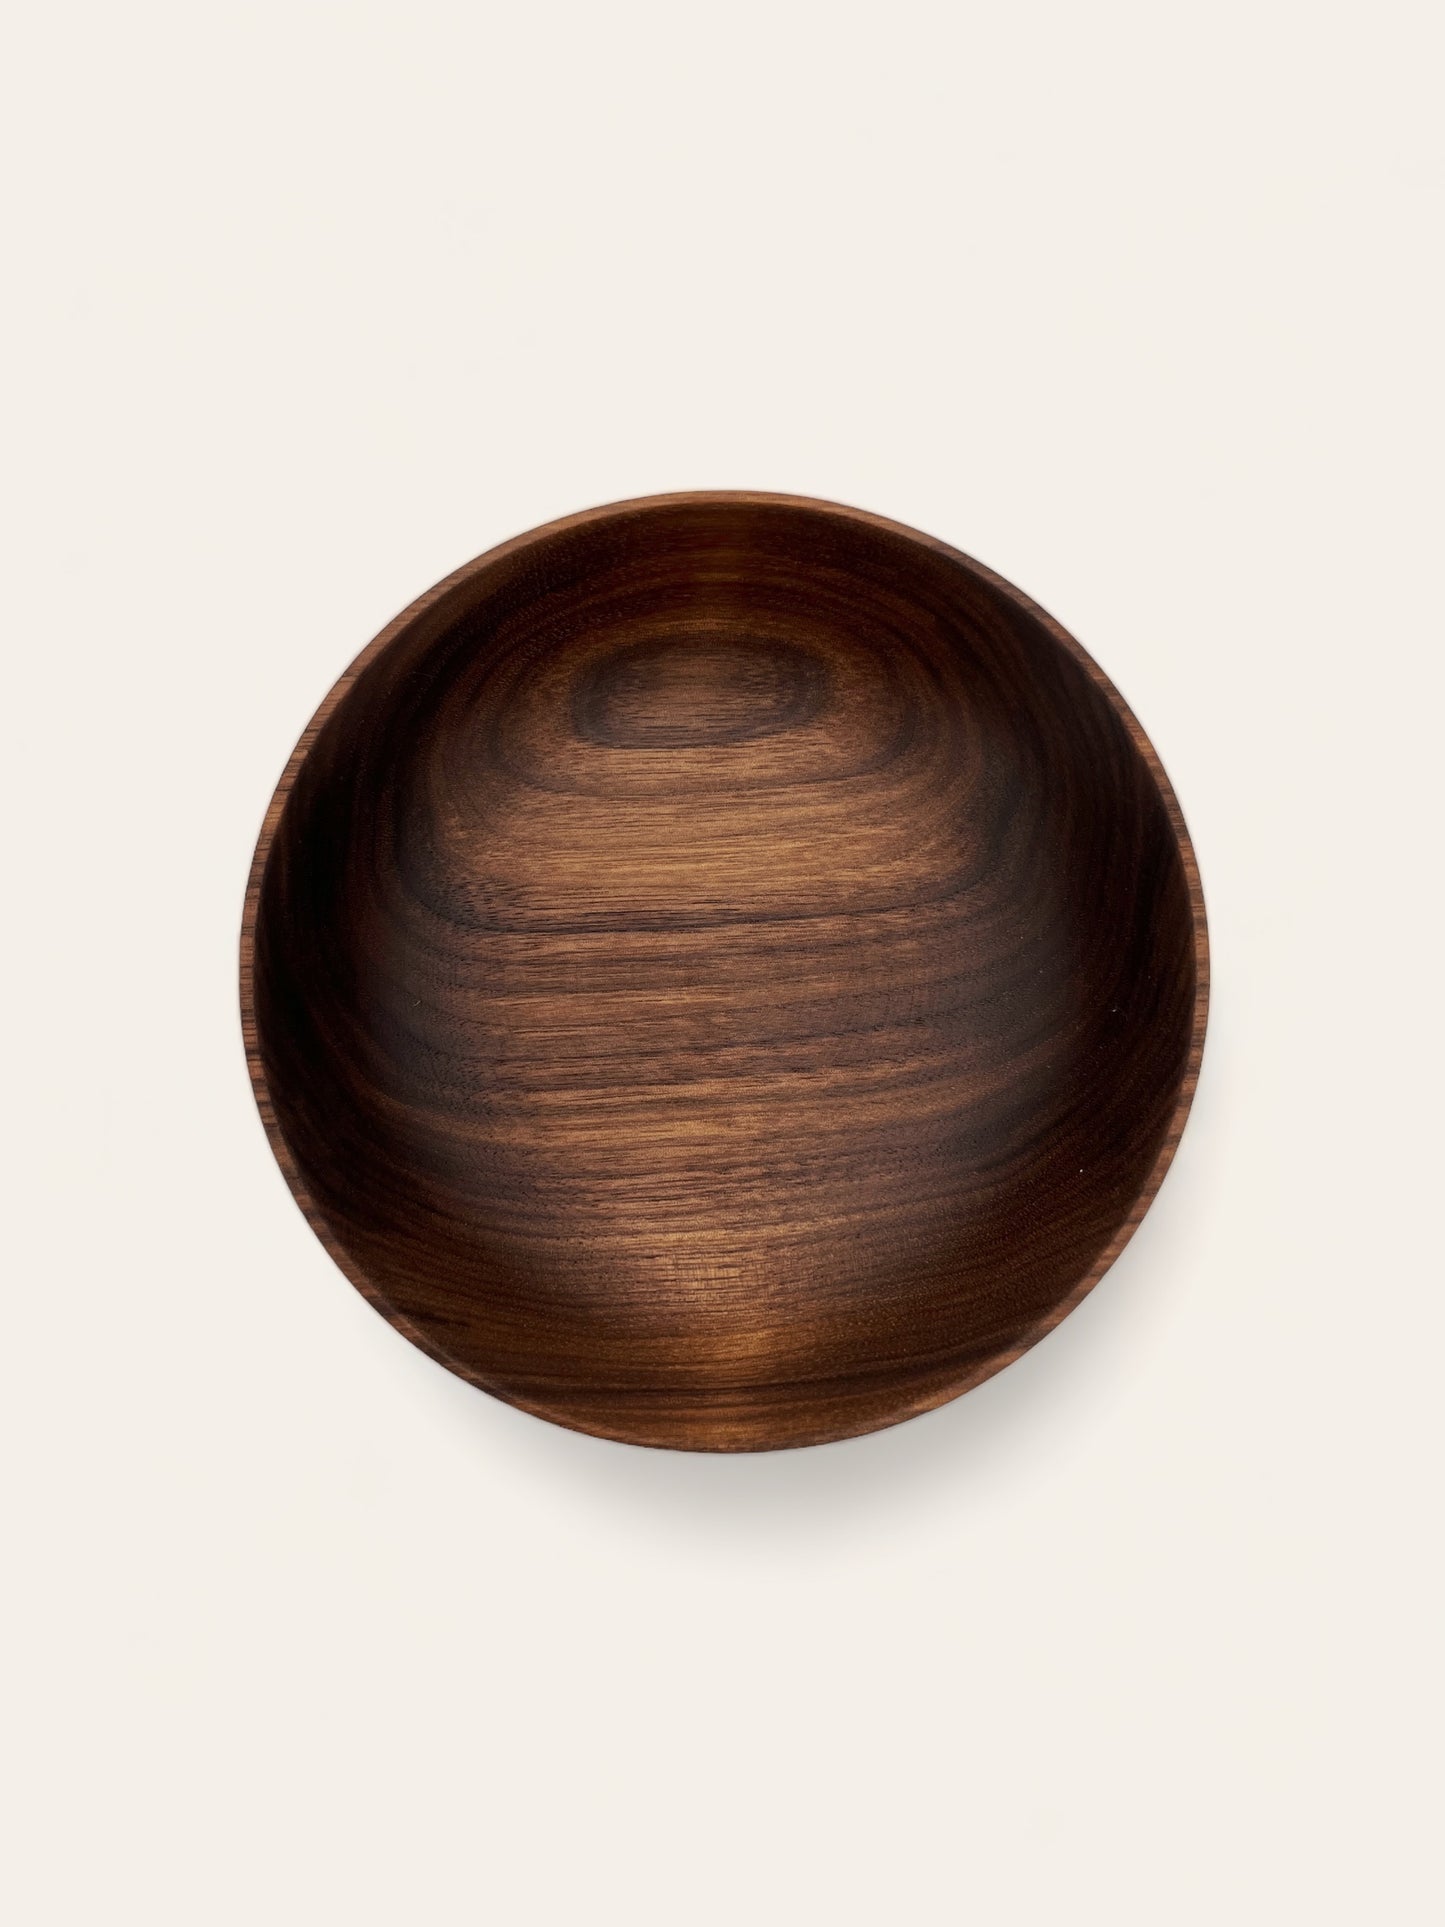 Little walnut bowl